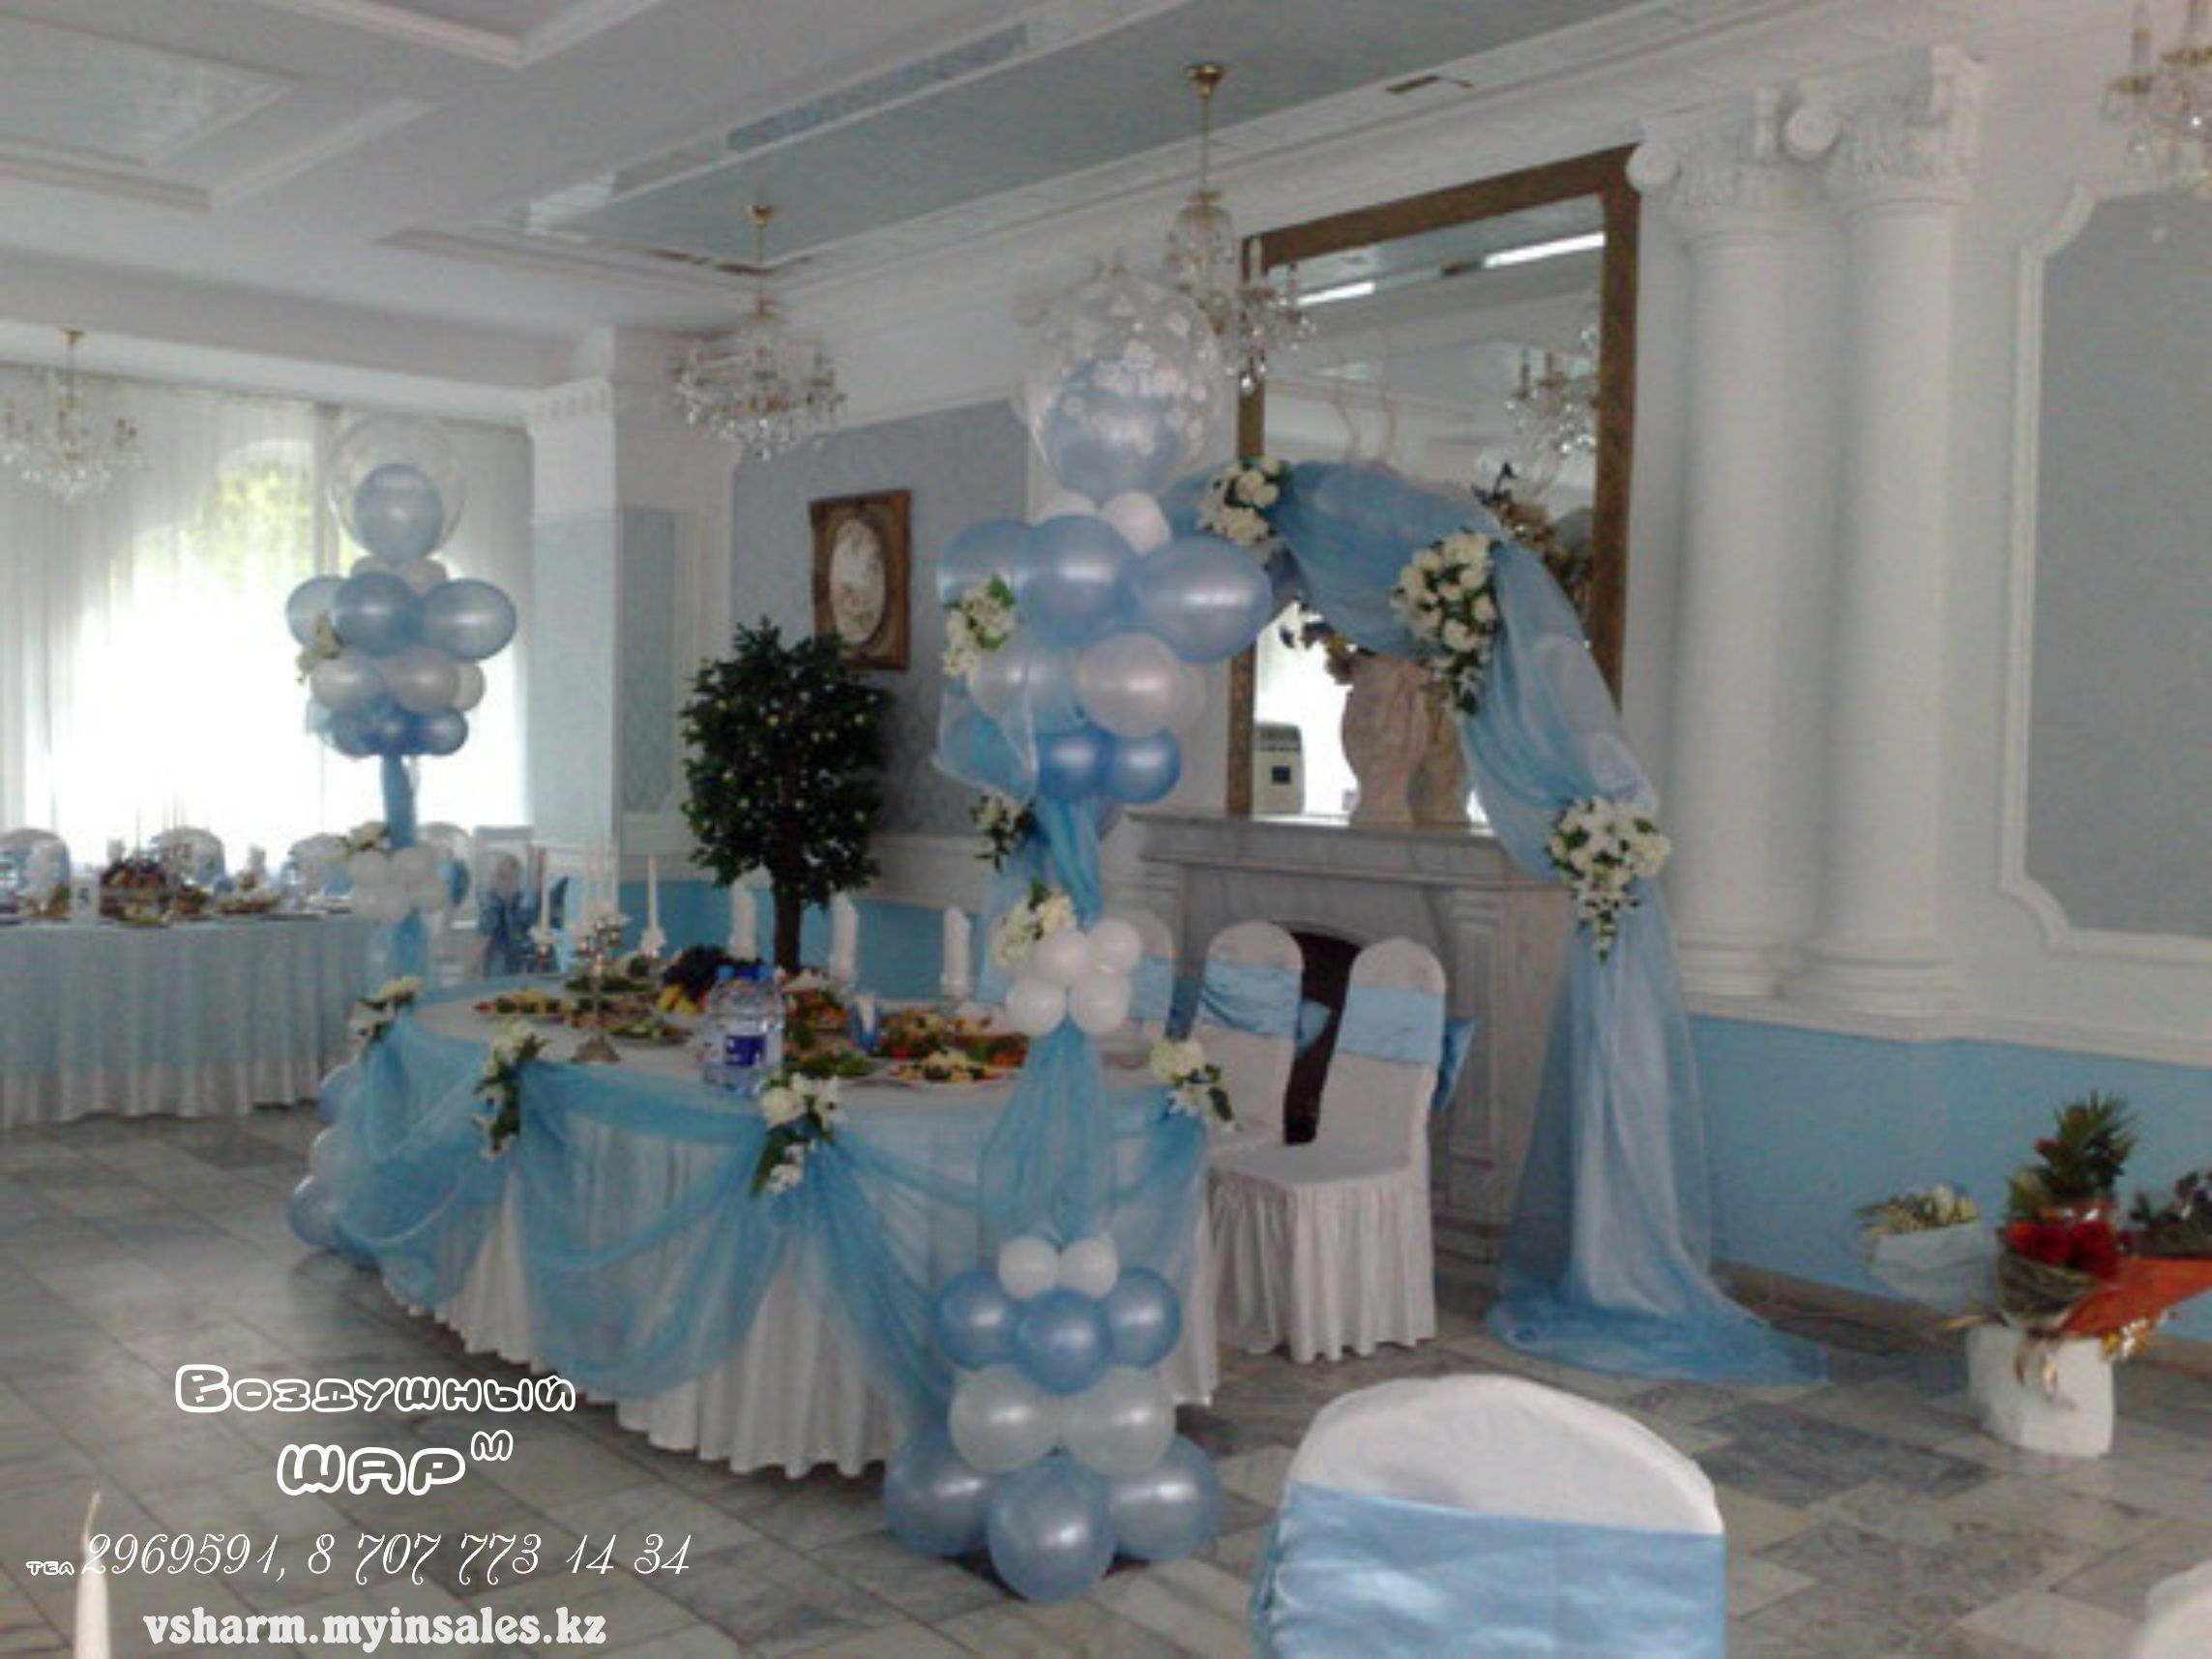 Оформление зала на свадьбу синий цвет